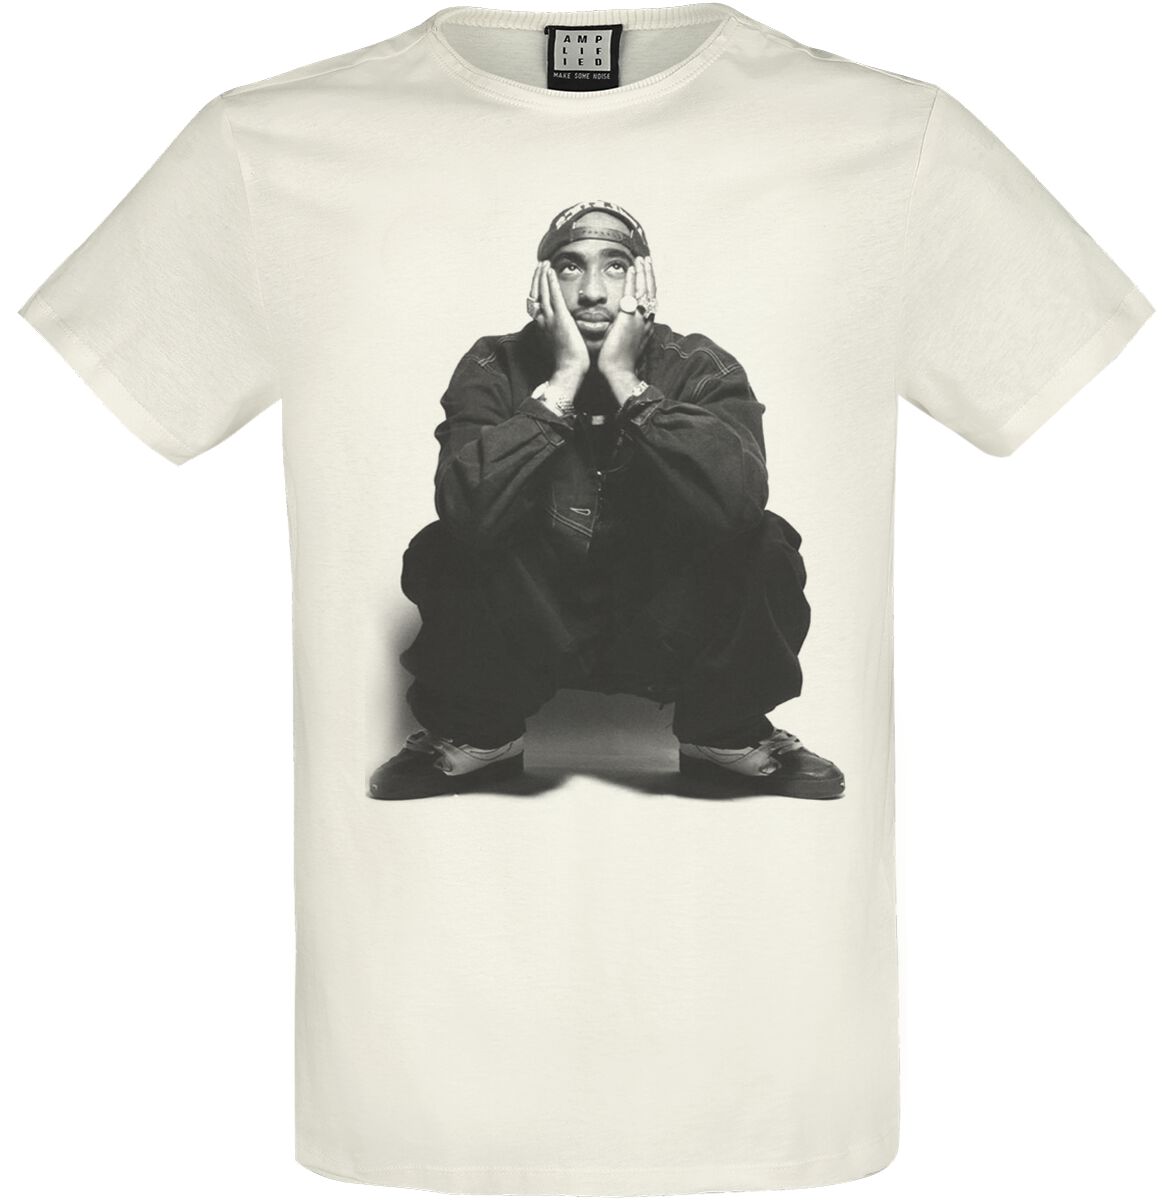 Tupac Shakur T-Shirt - Amplified Collection - Contemplation - S bis XXL - für Männer - Größe XXL - altweiß  - Lizenziertes Merchandise!